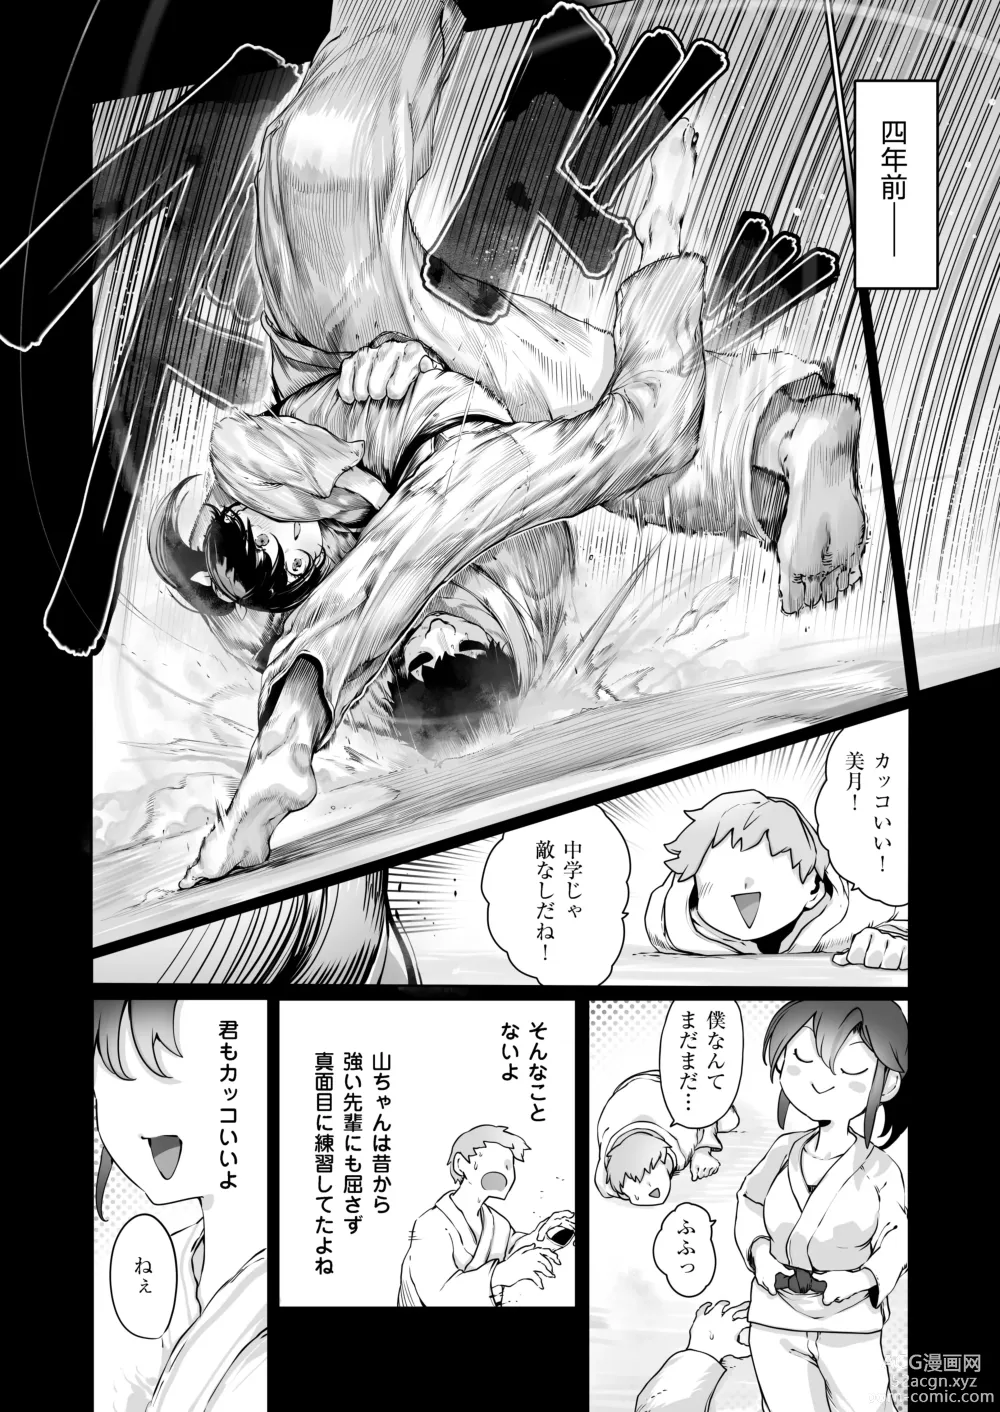 Page 3 of doujinshi Yozora no Tsuki ga Ochiru made